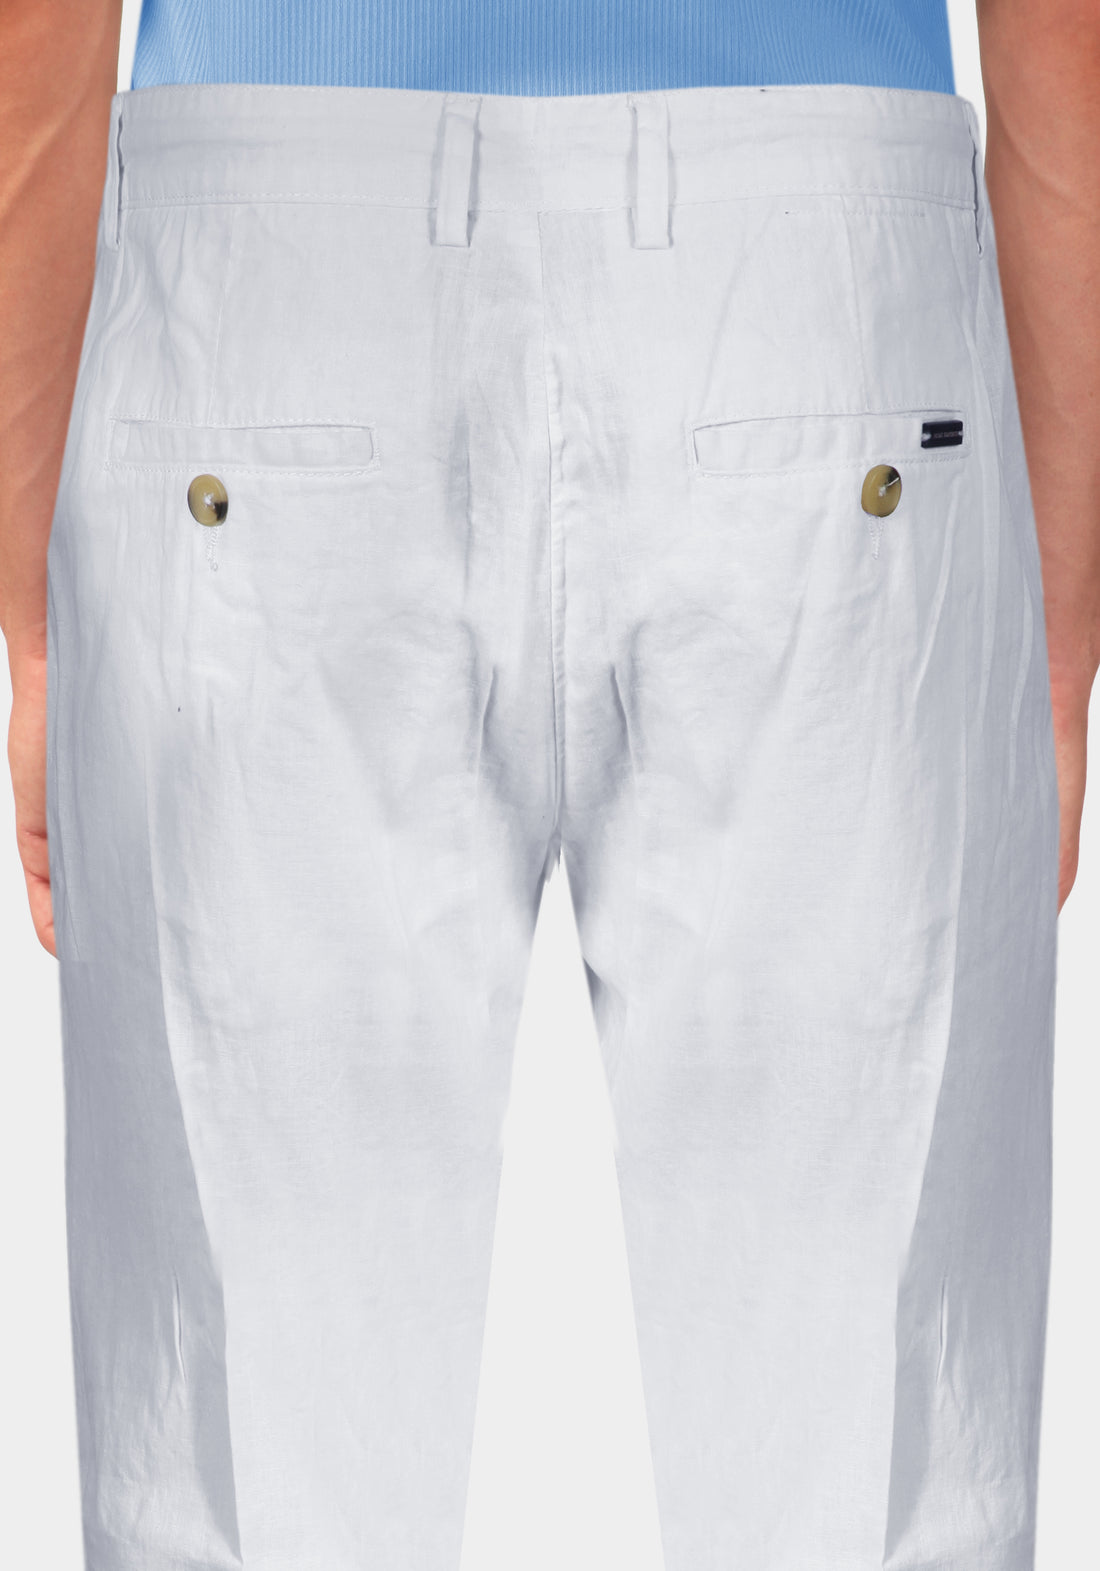 Pantalone con Laccio e Bottoni - Bianco